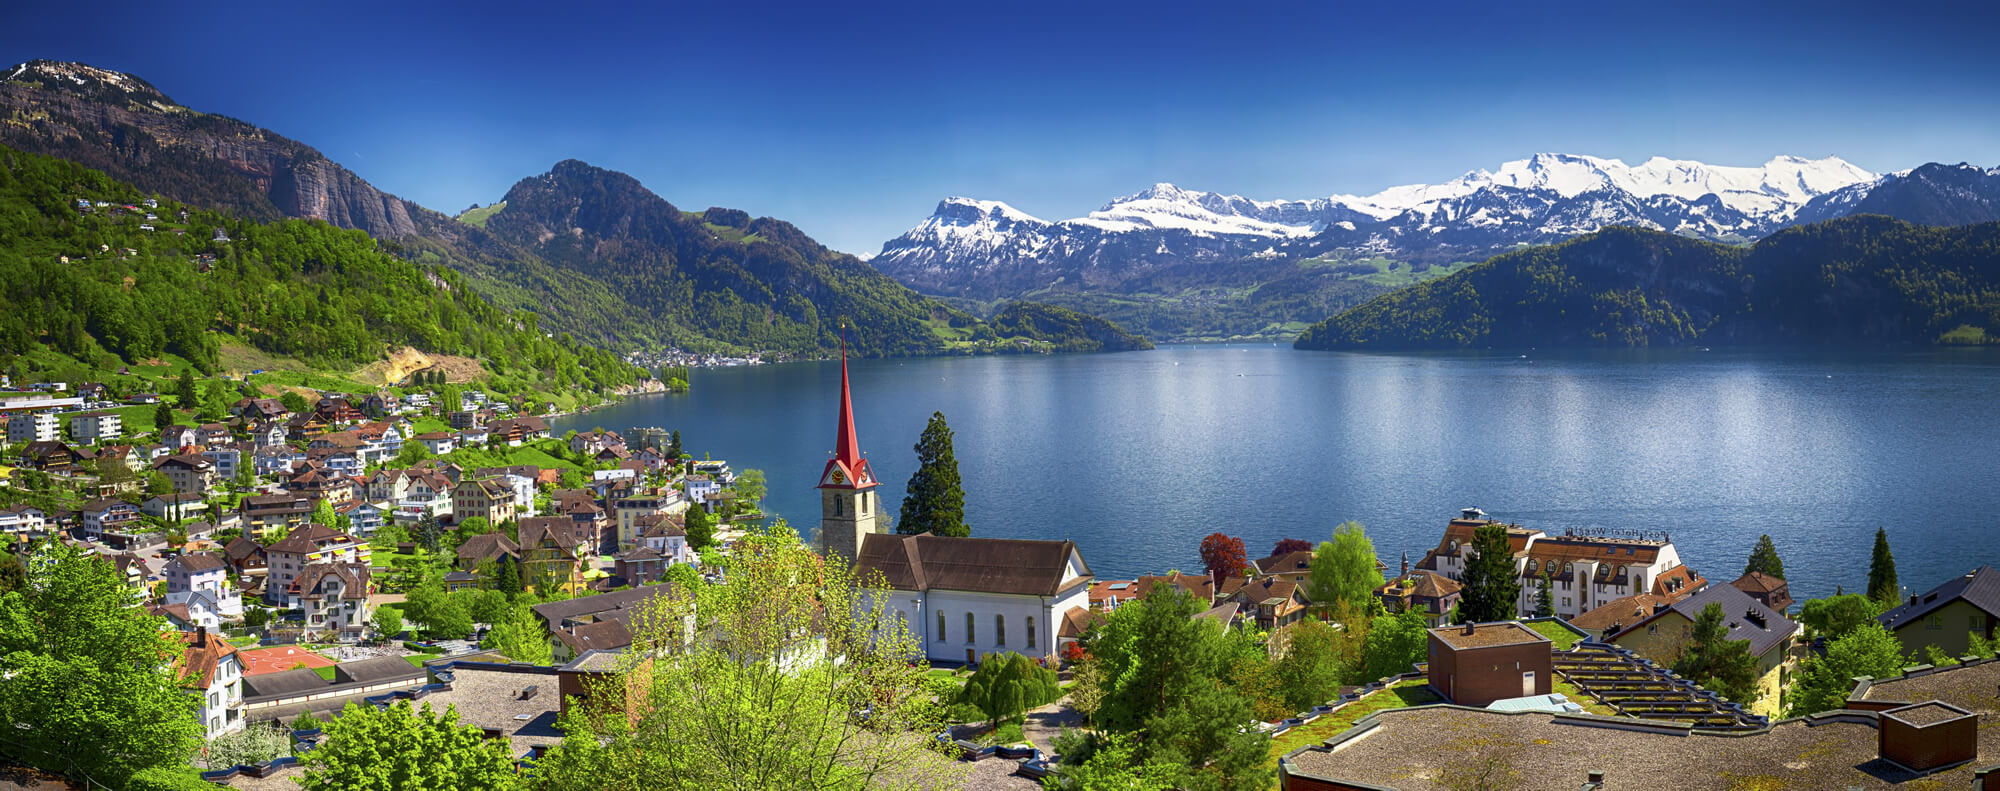 Weggis Lake Lucerne, Switzerland